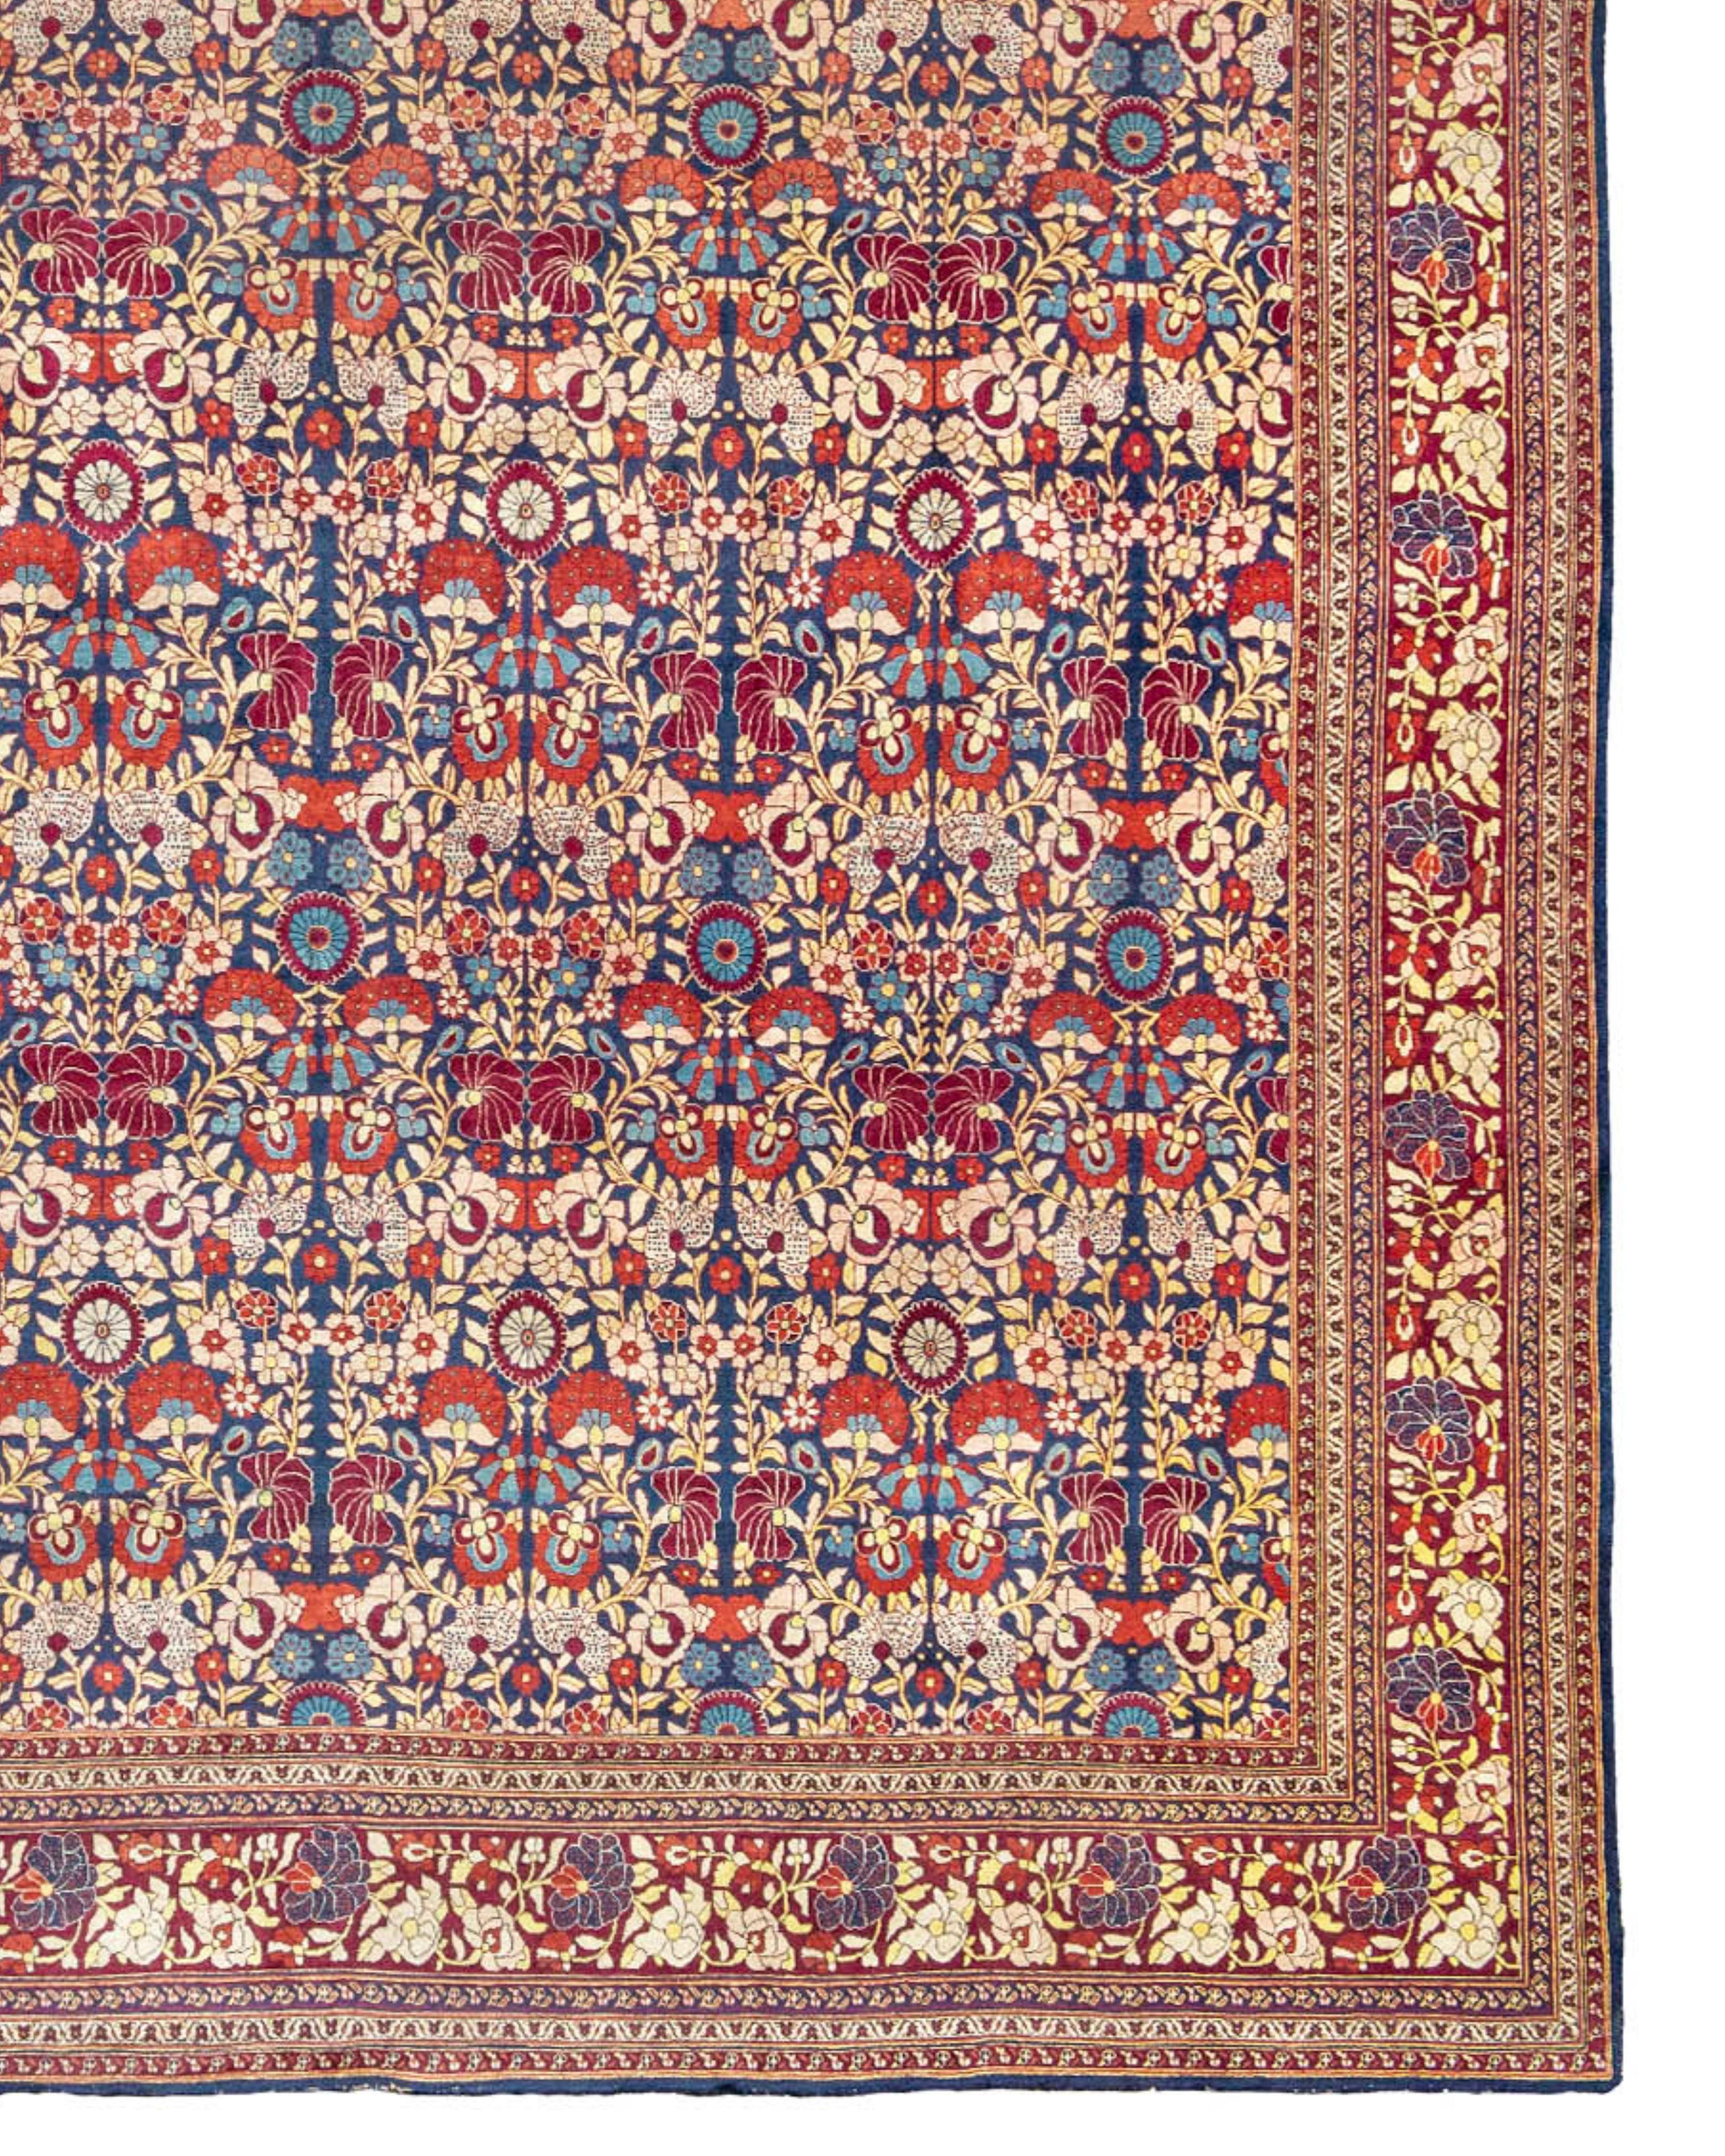 Antiker großer überdimensionaler persischer Mashad-Teppich, ca. 1900

Zusätzliche Informationen:
Abmessungen: 12'10